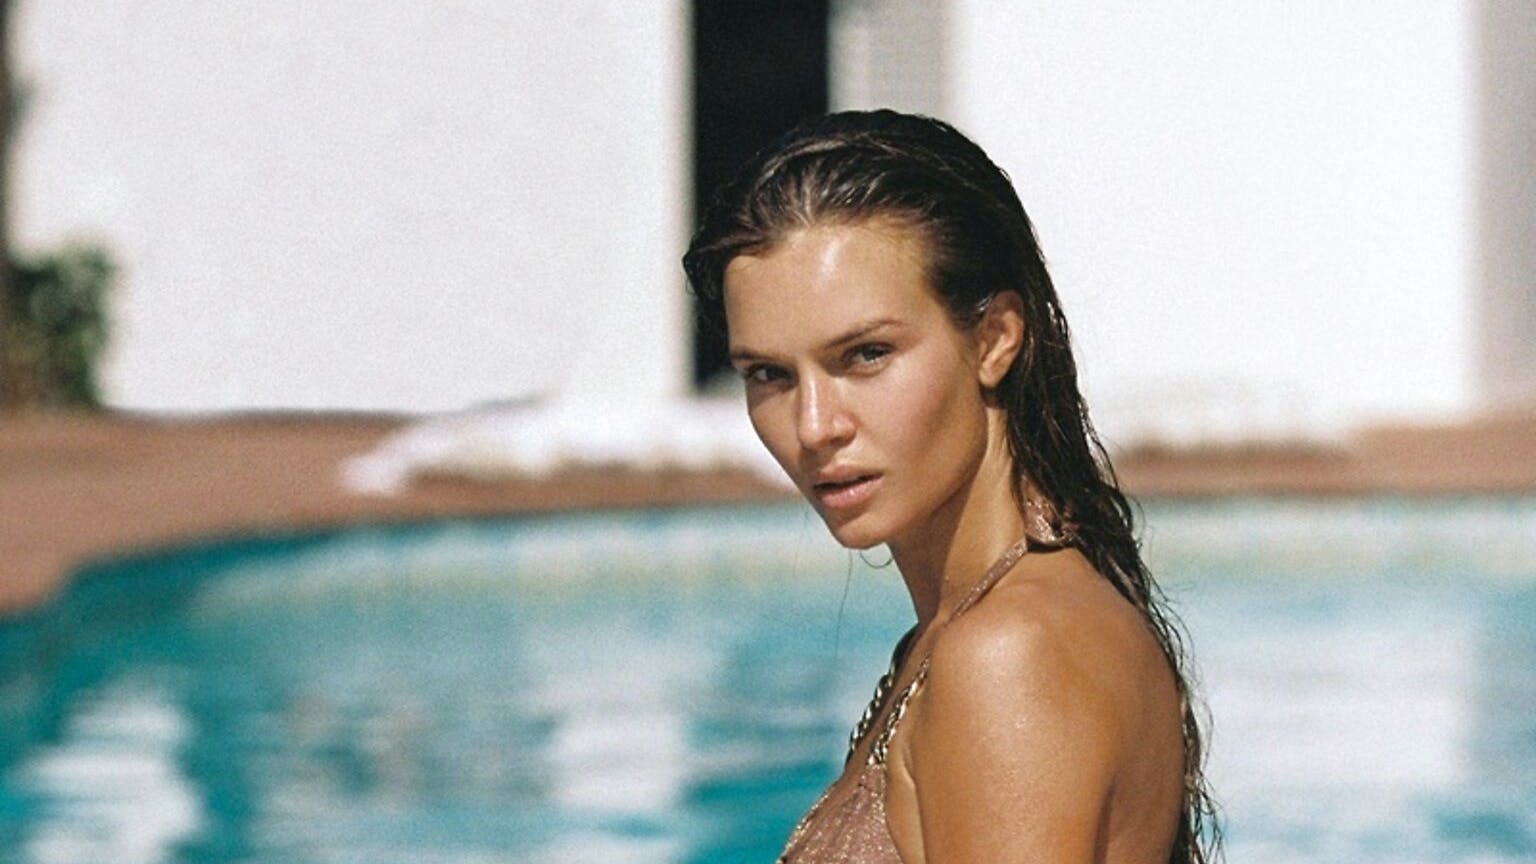 29-årige Josephine Skriver er en af de mest brugte danske modeller.
